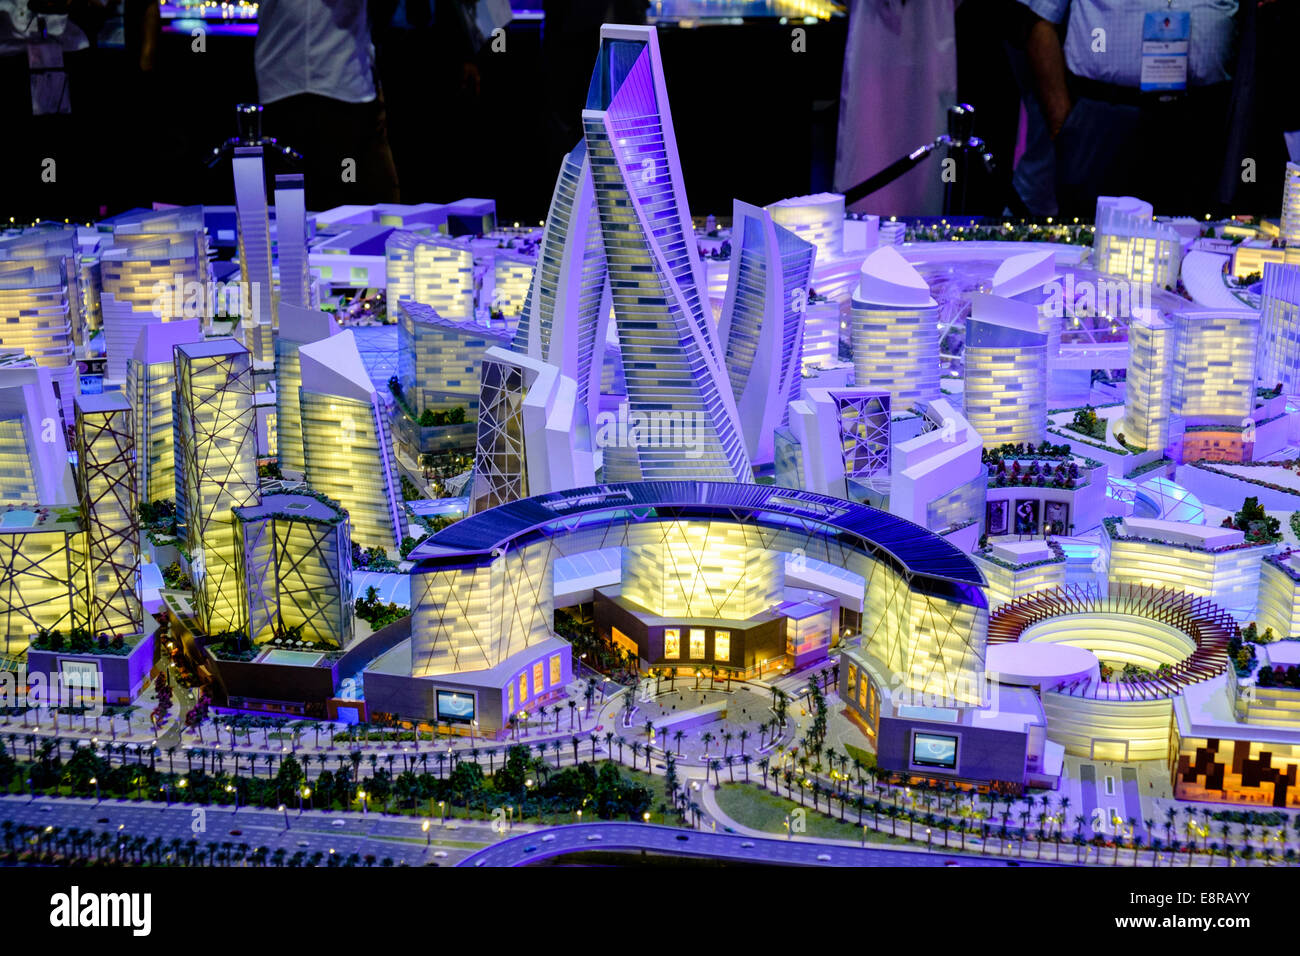 Modèle de proposition de nouveaux magasins de luxe et de développement de la propriété de l'hôtel au Mall du monde par developer Dubai Holding à l'intérieur de la propriété Banque D'Images